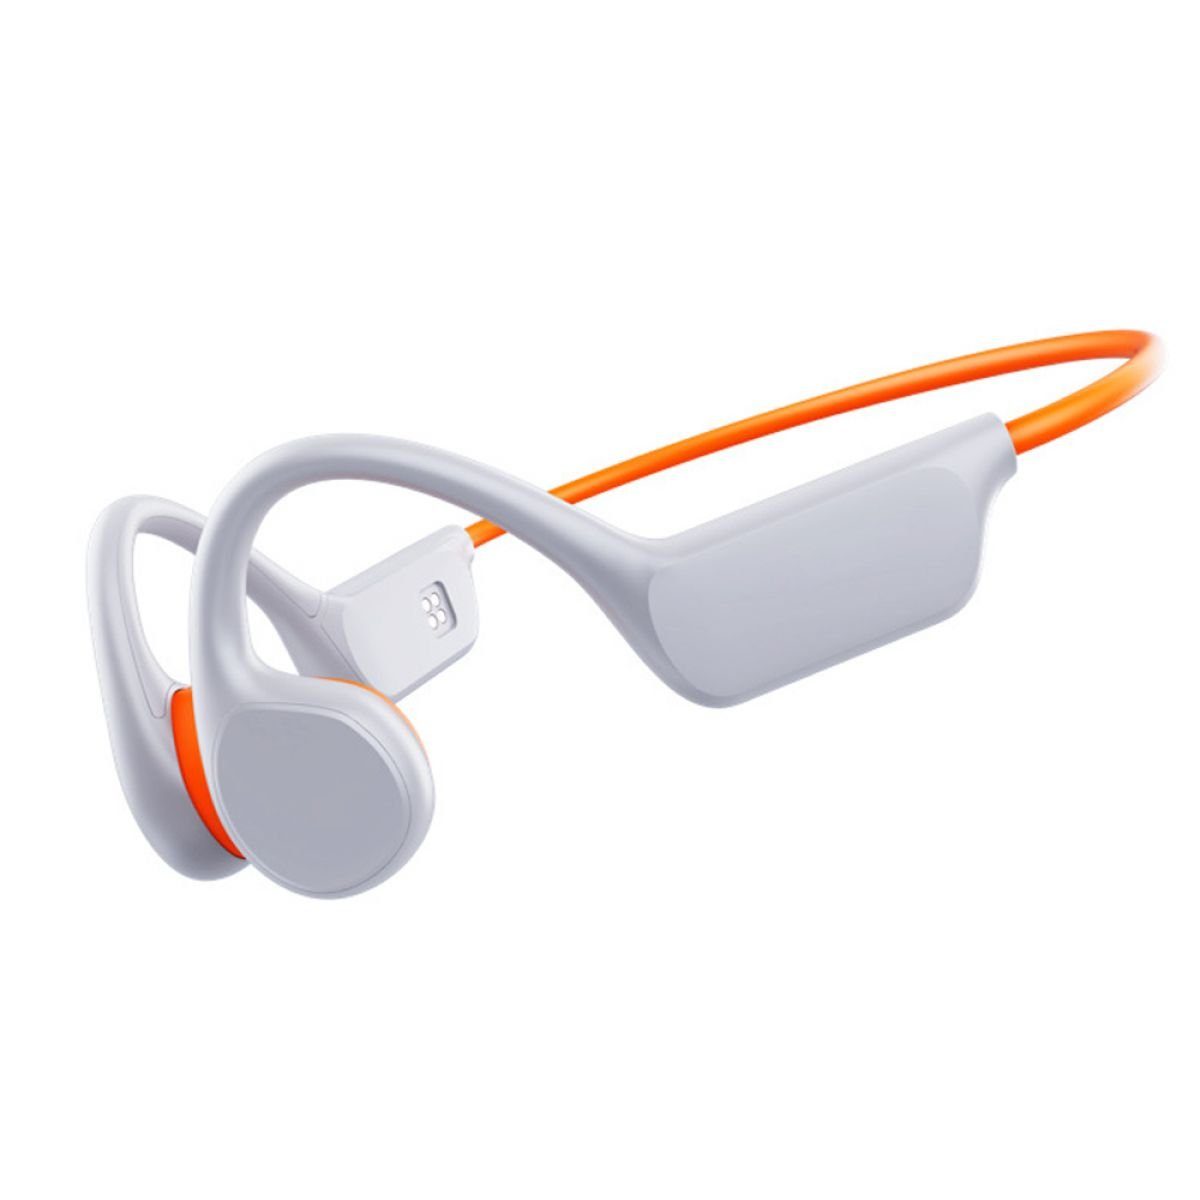 Jormftte Knochenschall Kopfhörer Bluetooth,Kabellos Sport Kopfhörer,für laufen Kopfhörer orange, weiß